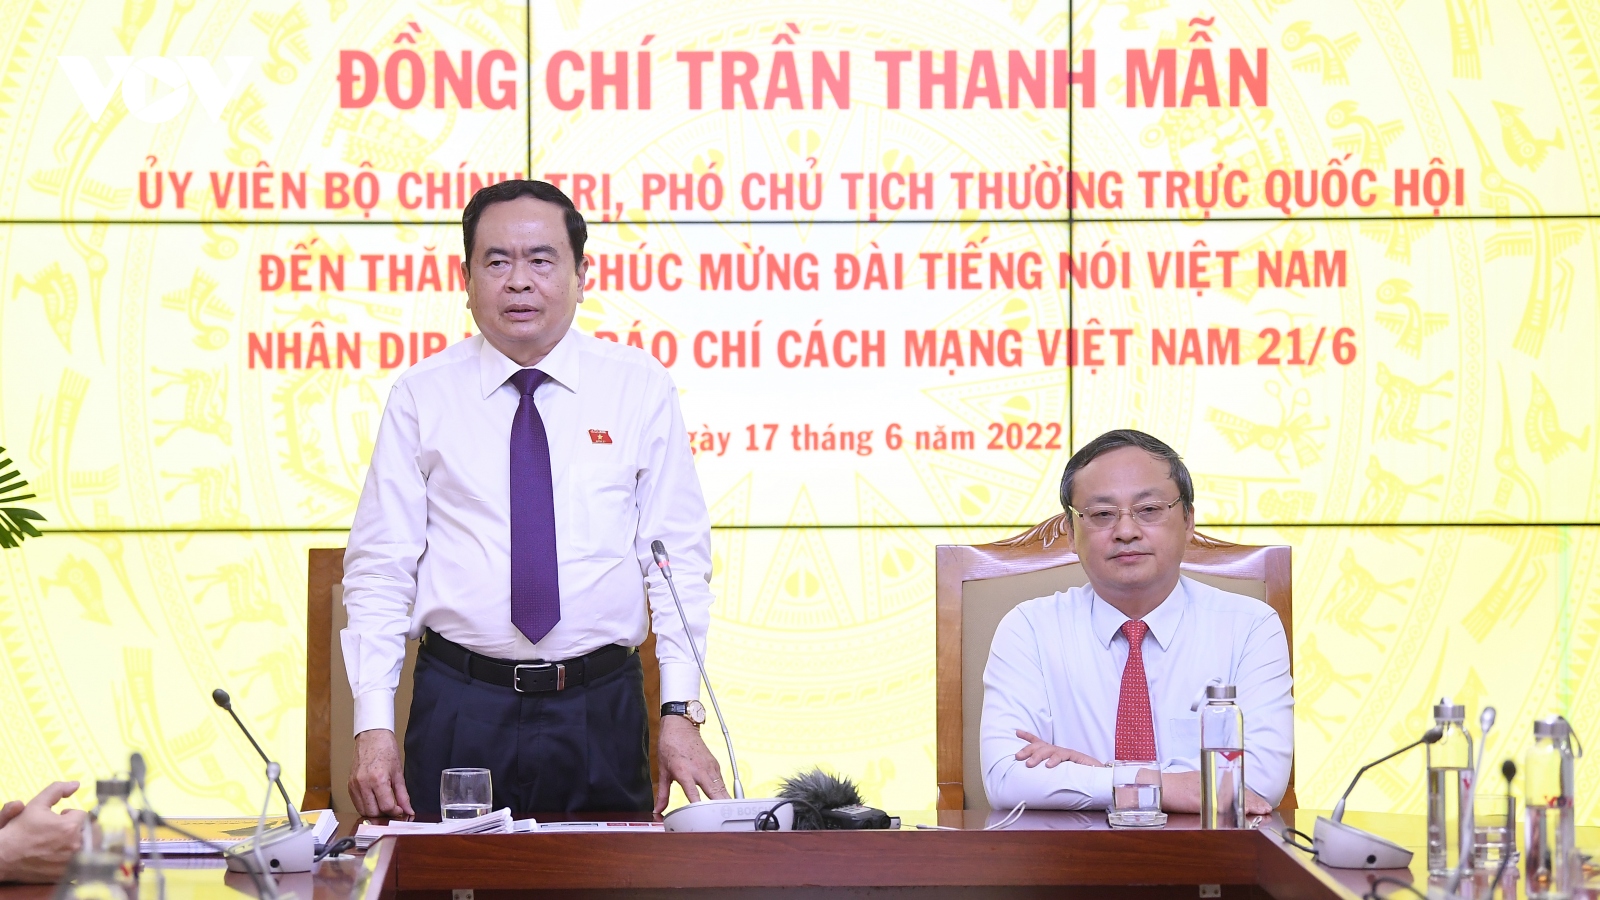 Phó Chủ tịch Quốc hội Trần Thanh Mẫn chúc mừng VOV nhân ngày 21/6